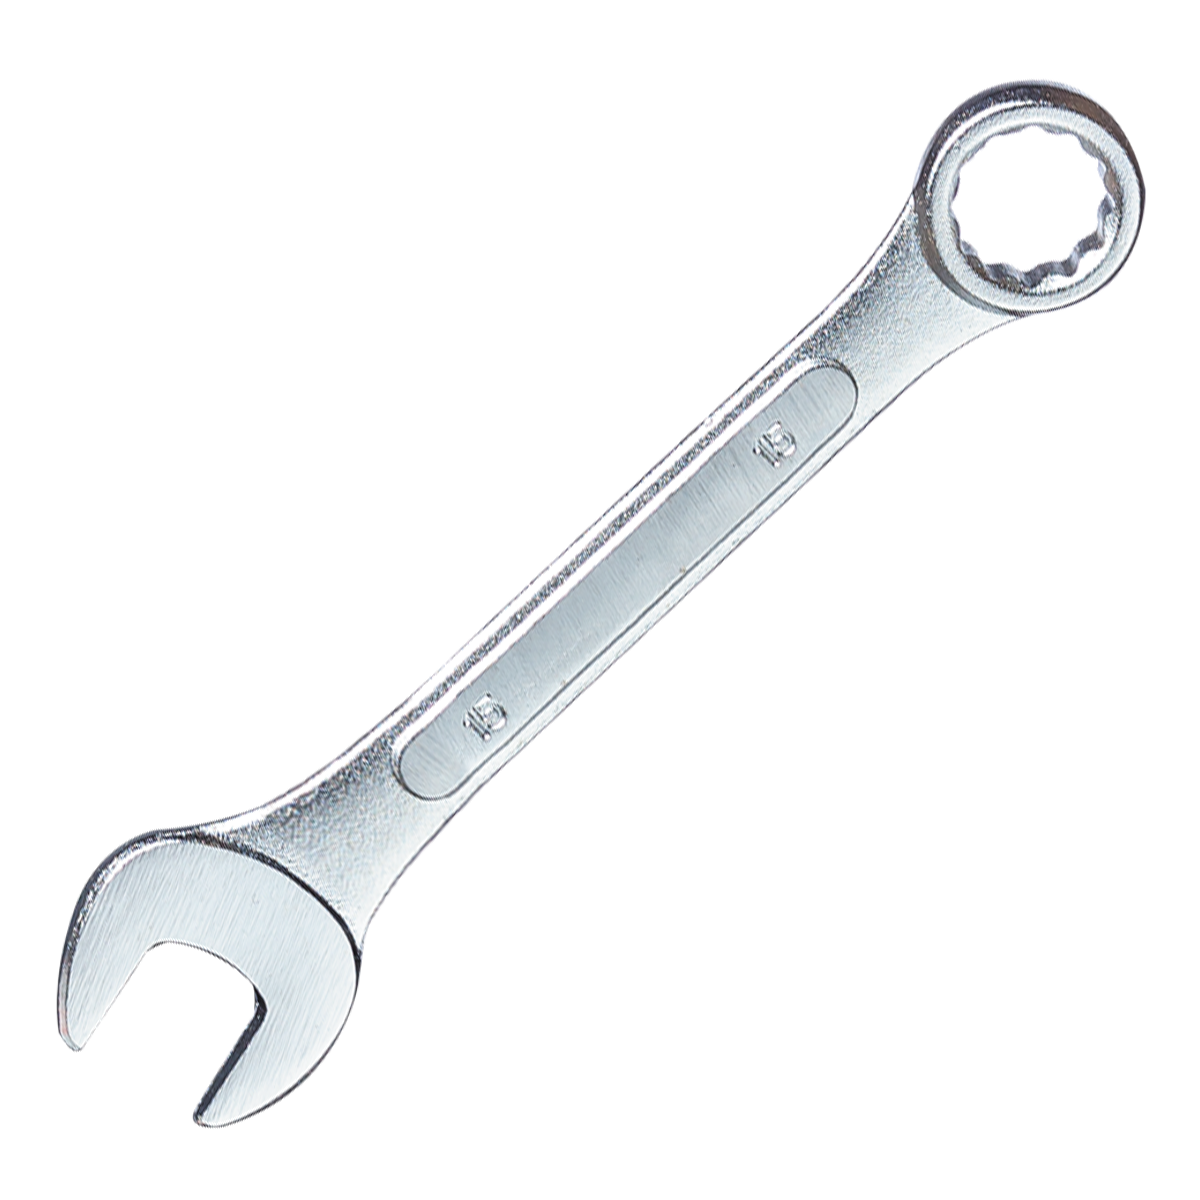 Ключ гаечный комбинированный, 25 мм ZIPOWER COMBINATION SPANNER 25 mm гаечный ключ сибин 27089 08 комбинированный 8 мм